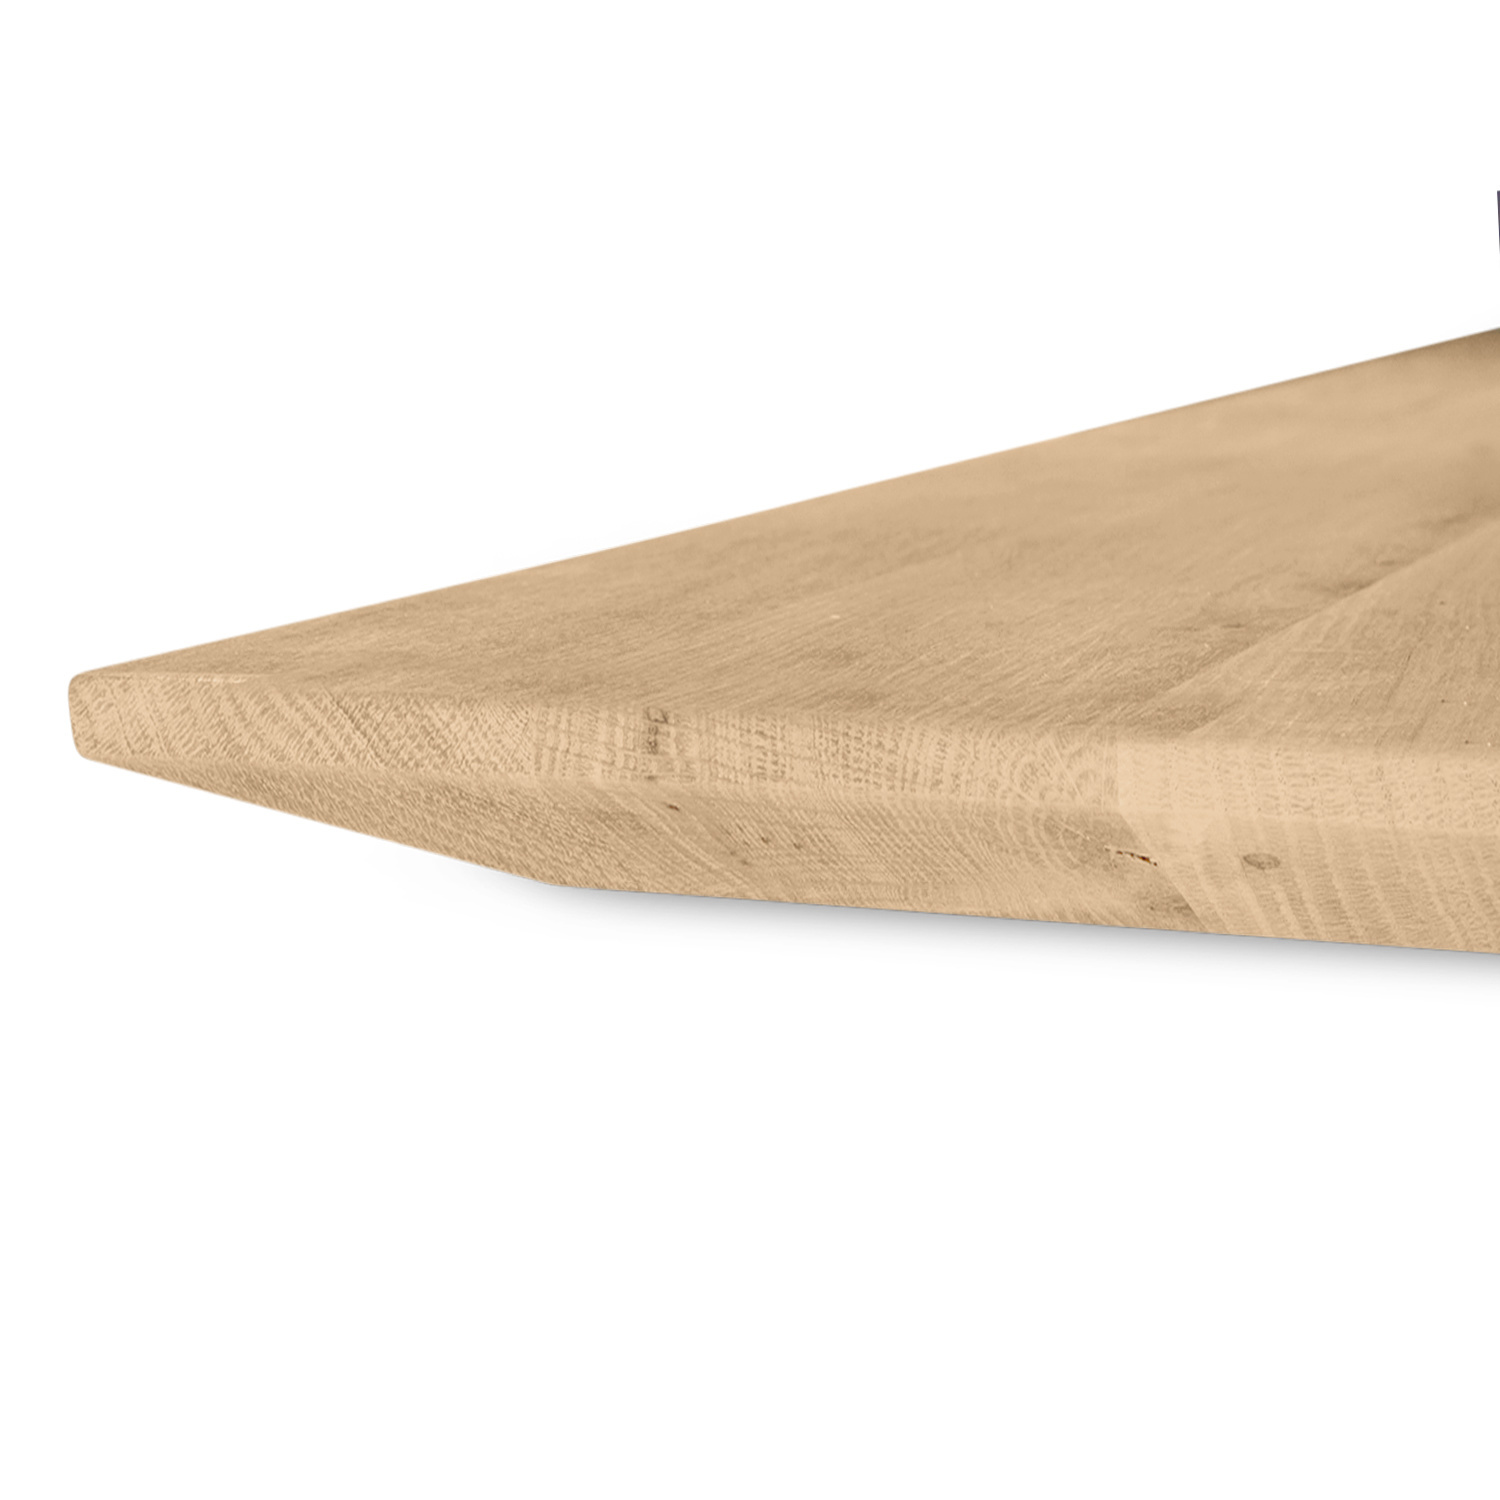  Eiken tafelblad met verjongde rand - 4 cm dik (1-laag) - Diverse afmetingen - foutvrij Europees eikenhout - met brede lamellen (circa 10-12 cm) - verlijmd kd 8-12%